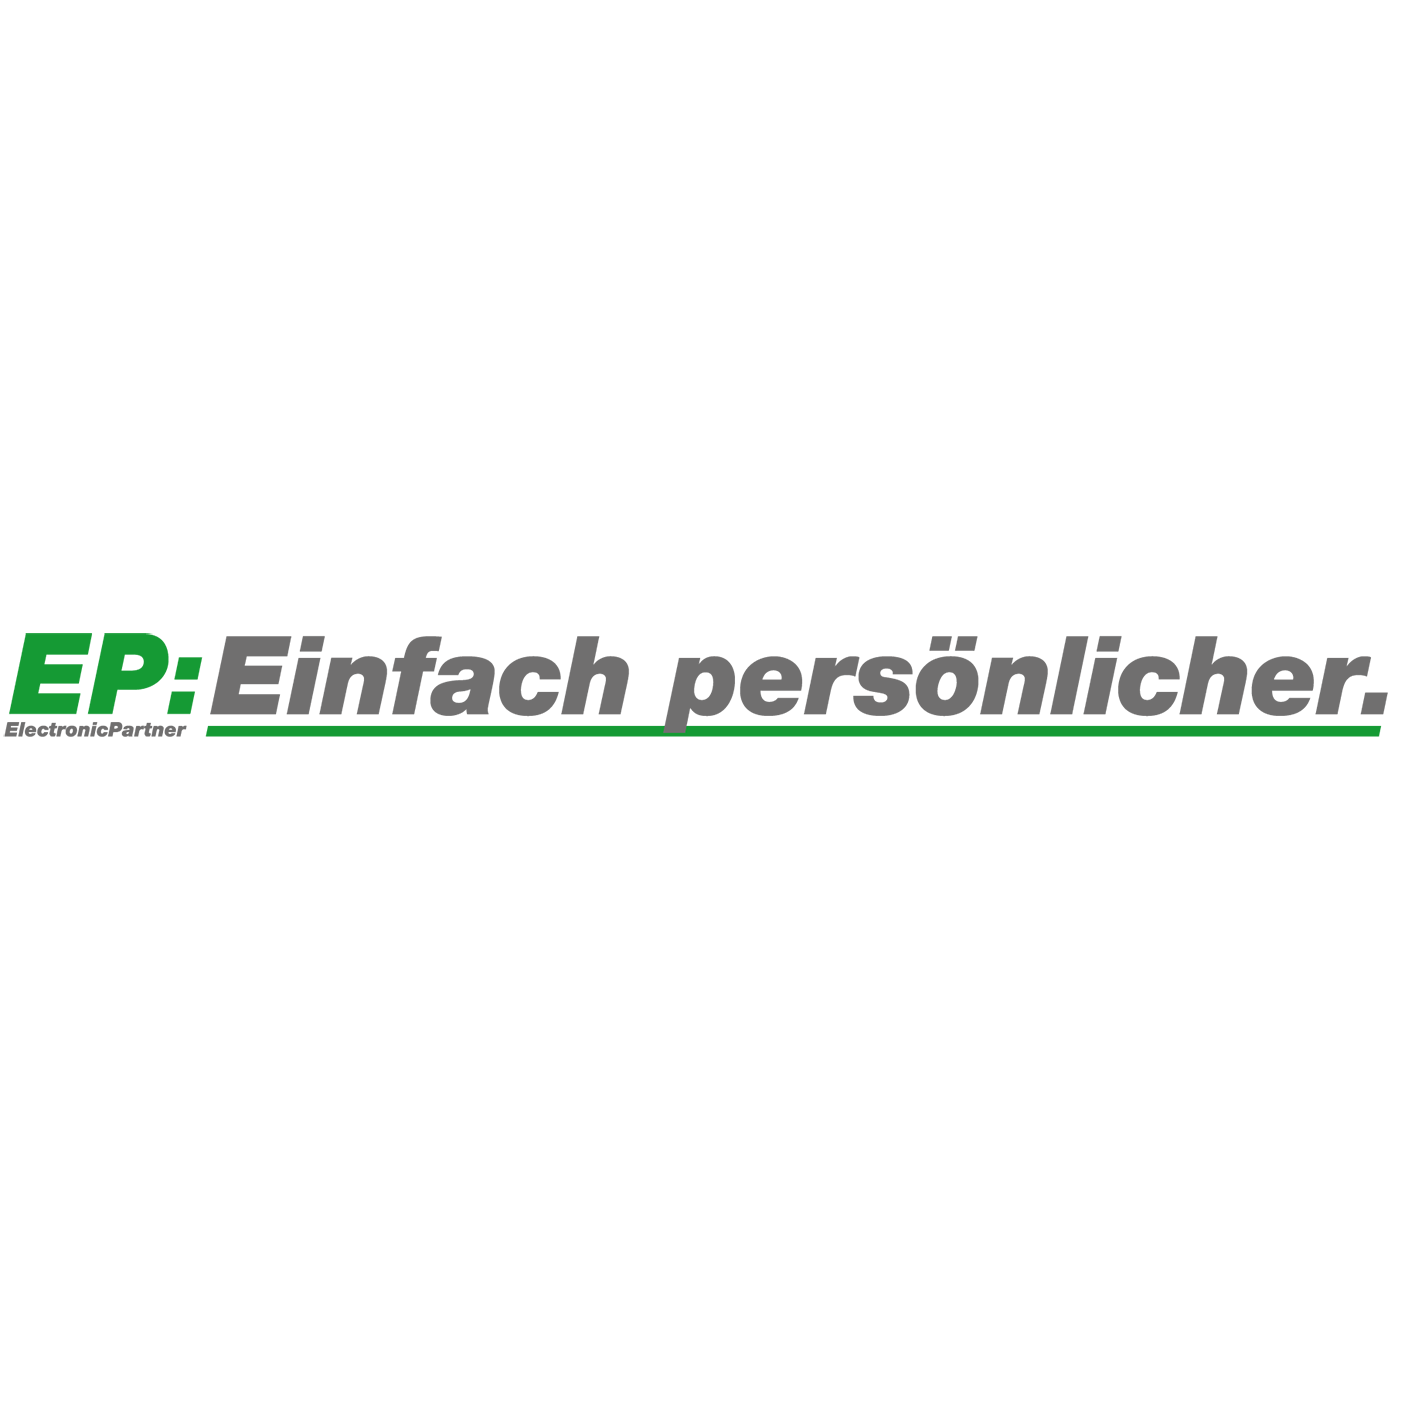 EP:Baumann Logo